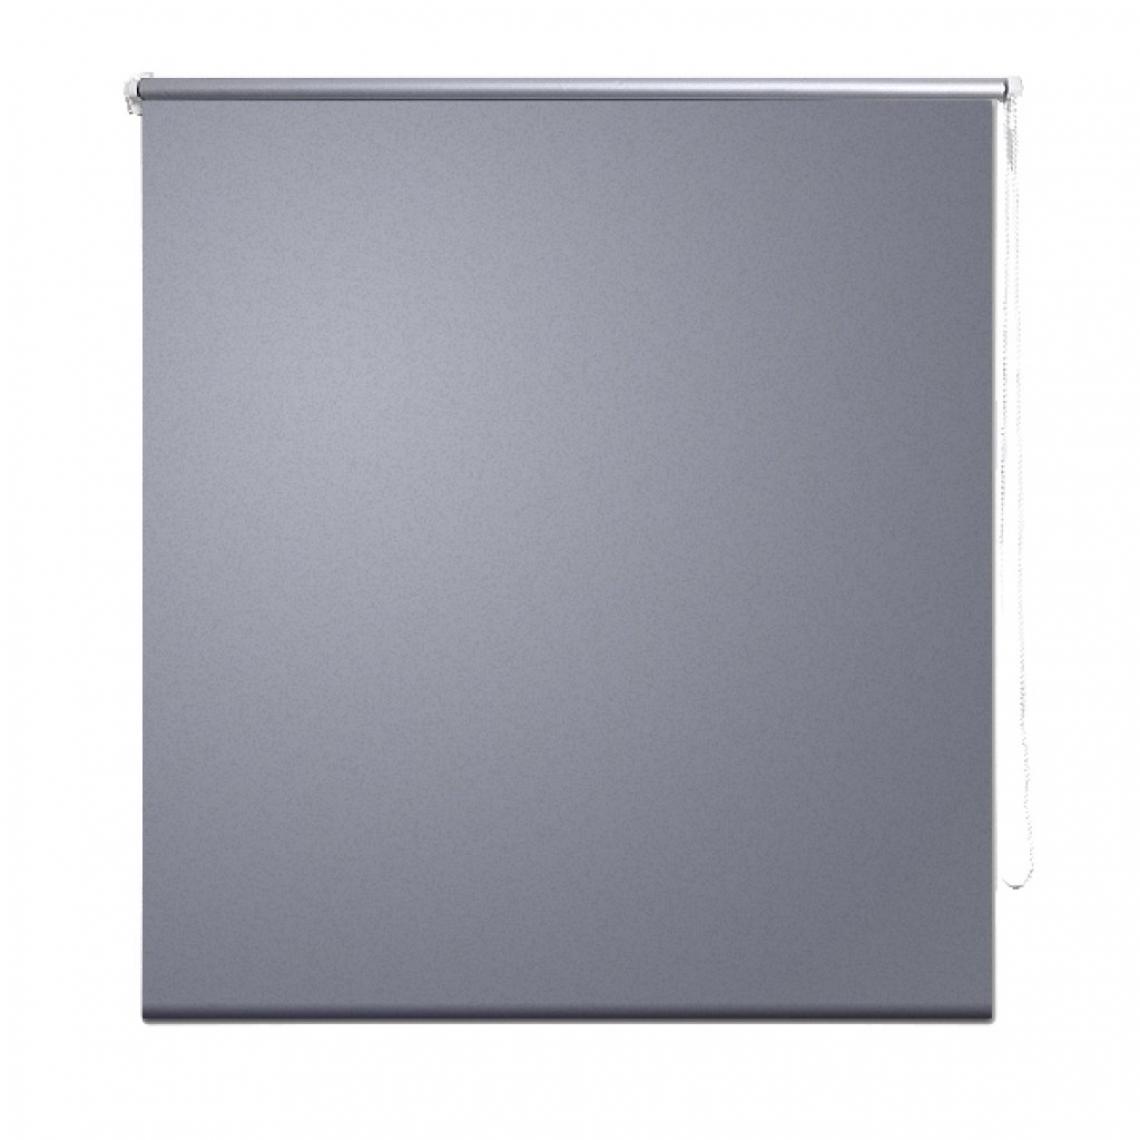 Helloshop26 - Store enrouleur gris occultant 120 x 230 cm fenêtre rideau pare-vue volet roulant 4102060 - Store compatible Velux